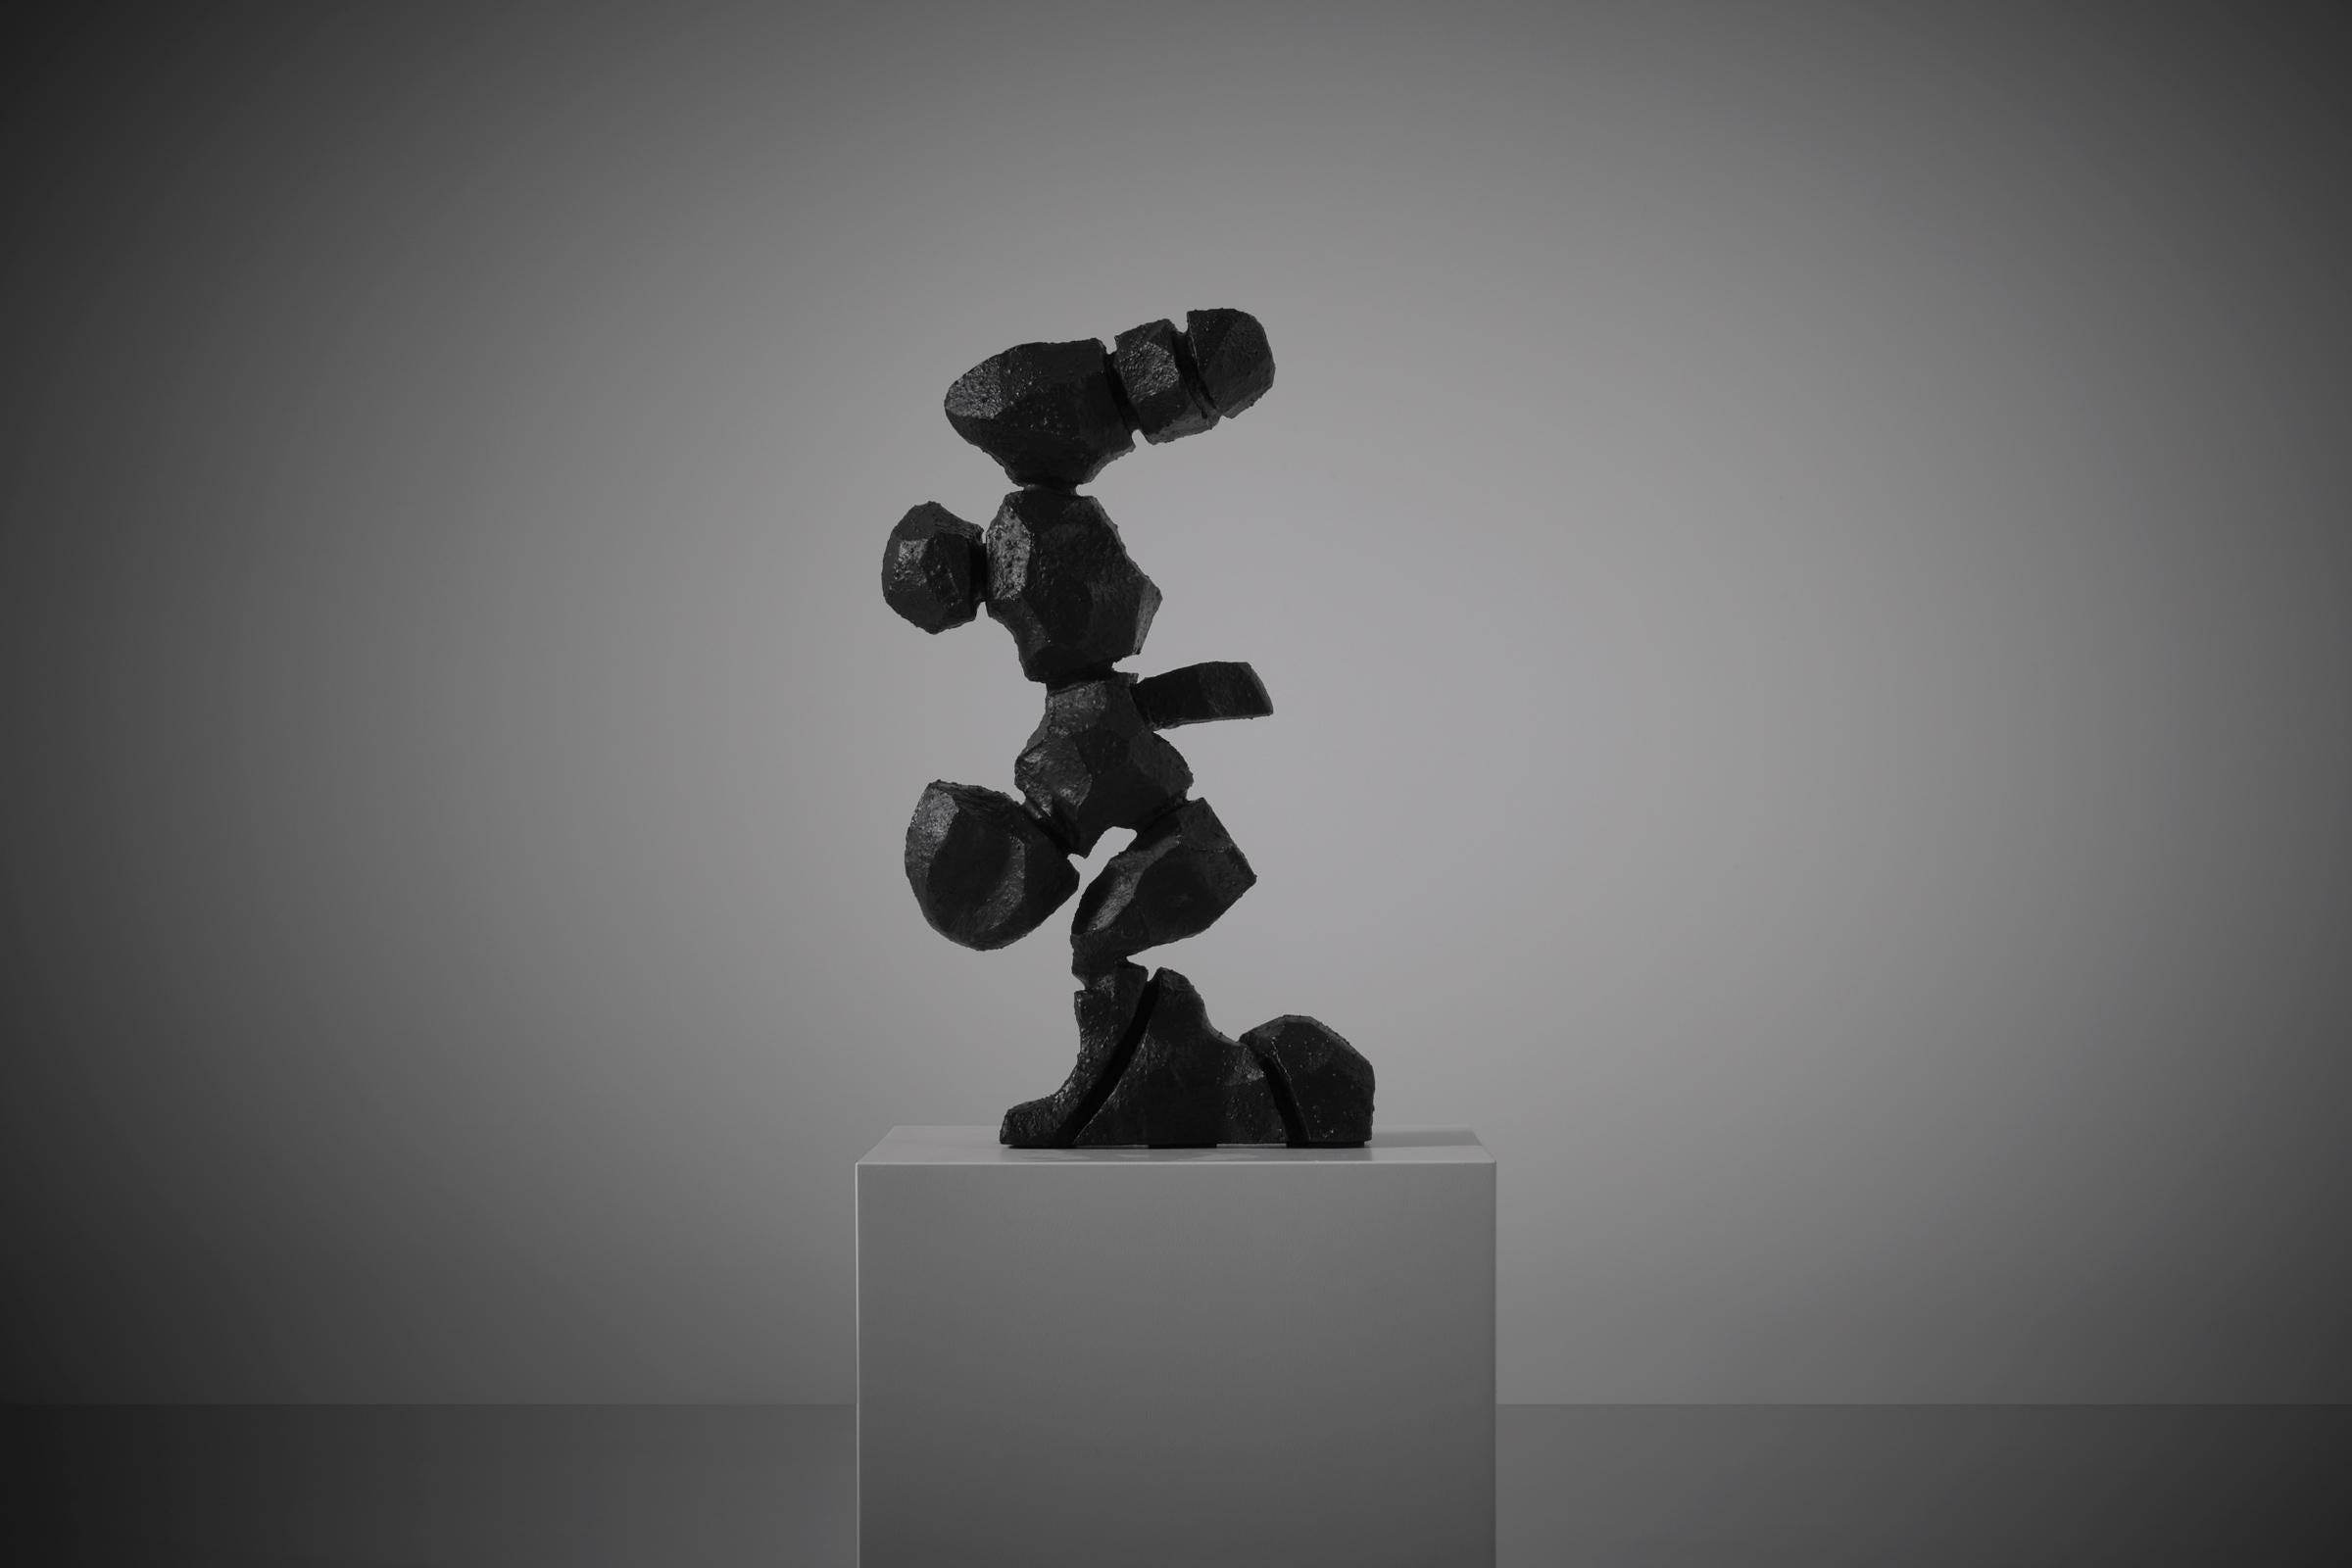 Sculpture abstraite en fonte, Espagne, années 1970. La sculpture est fabriquée en fonte solide et lourde, avec une surface structurée rugueuse et teintée en noir. Présentation intéressante de formes abstraites de cactus ou de roches érodées qui